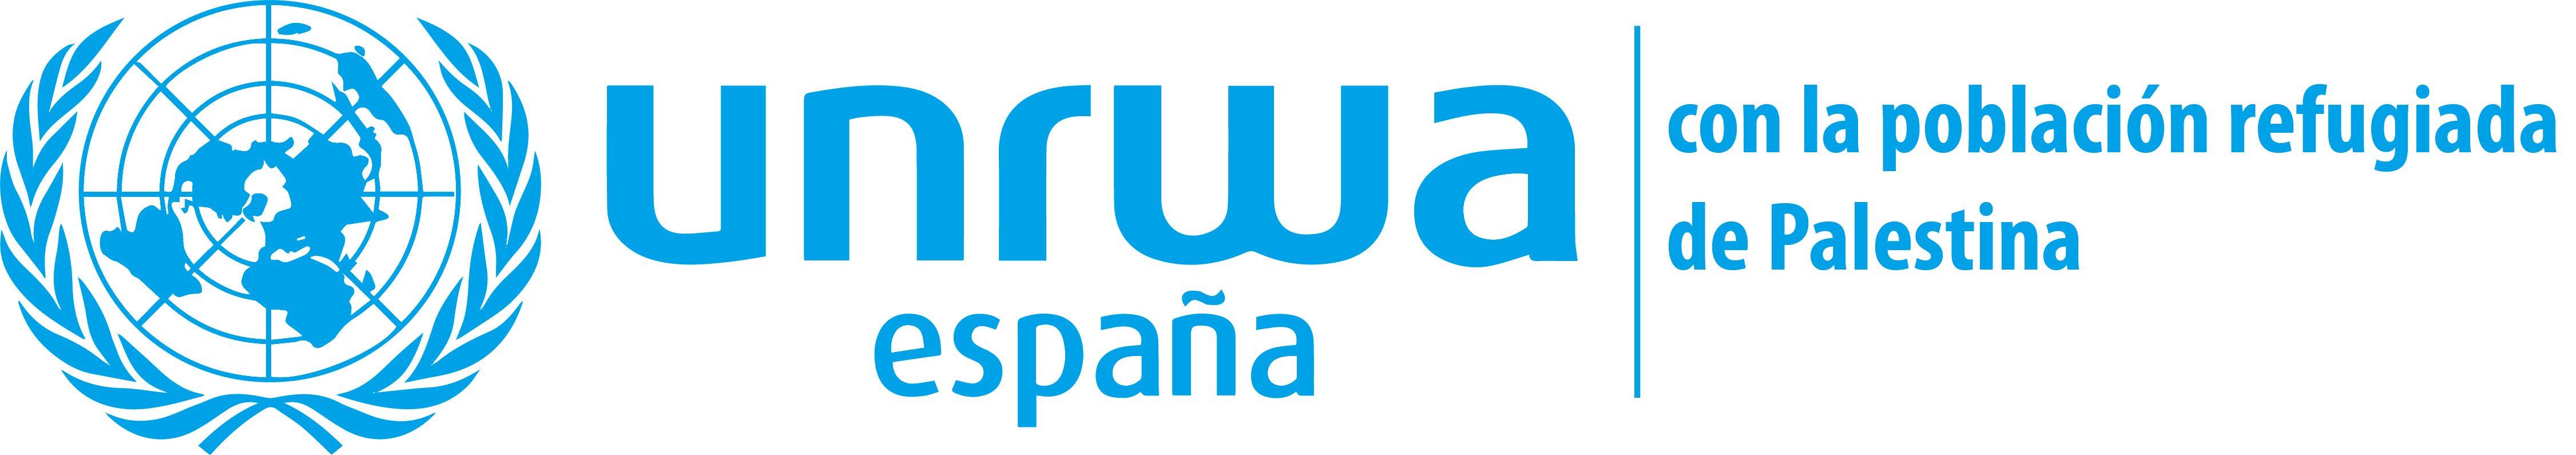 UNRWA - Trabaja con nosotros